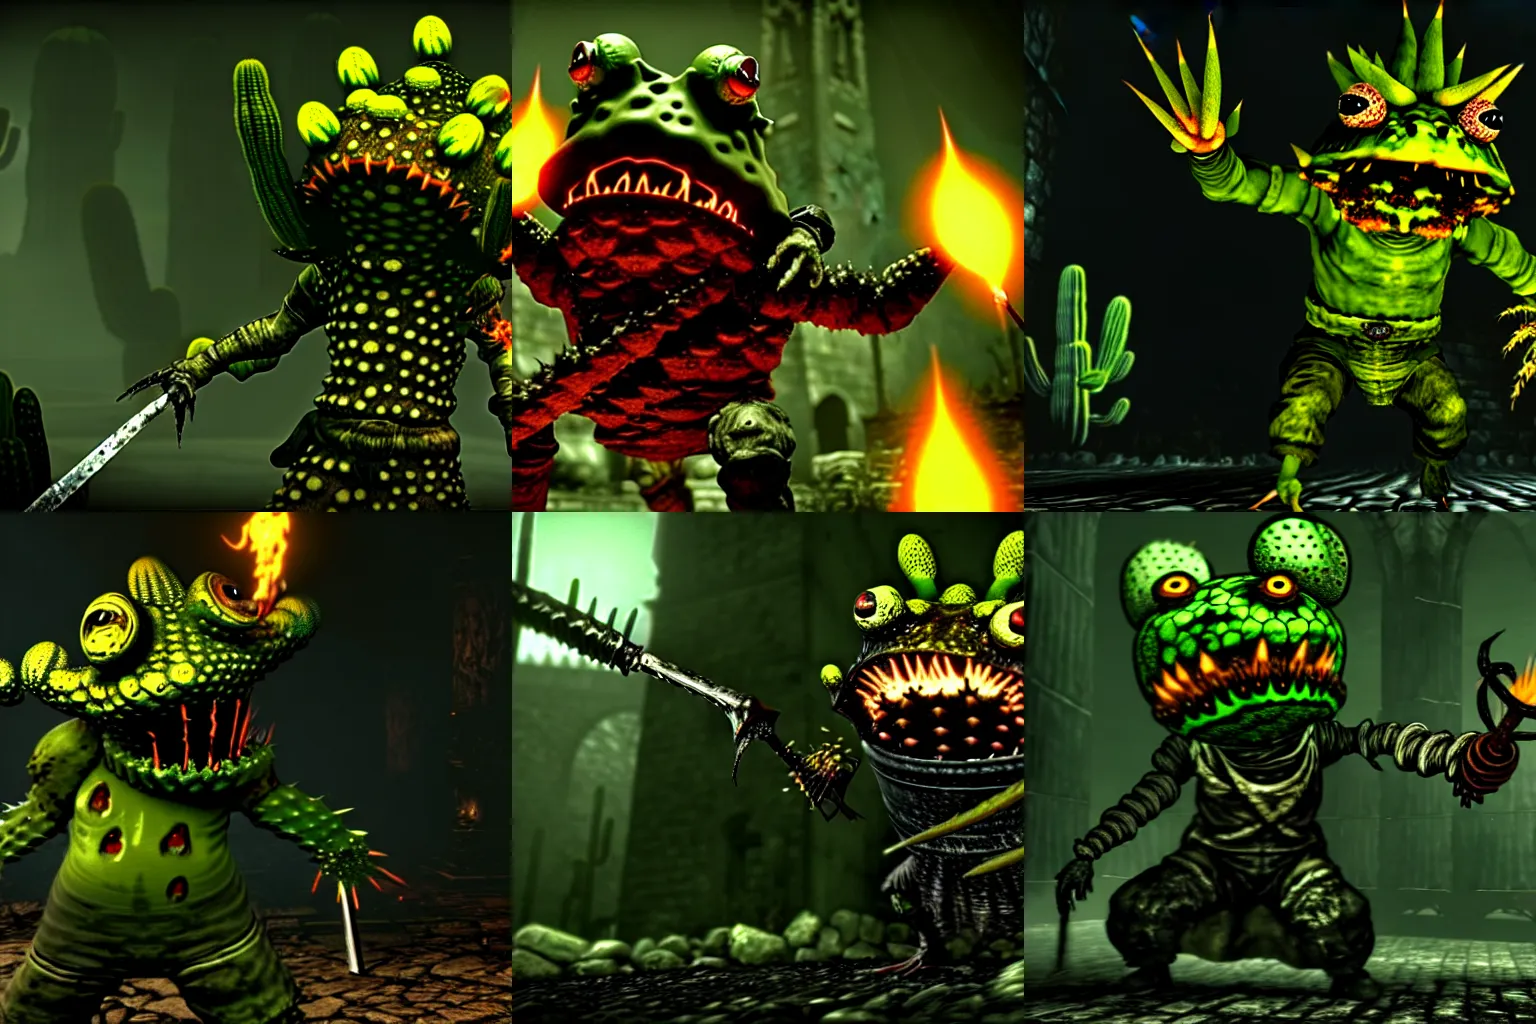 Prompt: A Dark Souls Screenshot of an Acid-Bucket-Wielding Cactus-Toad-Demon